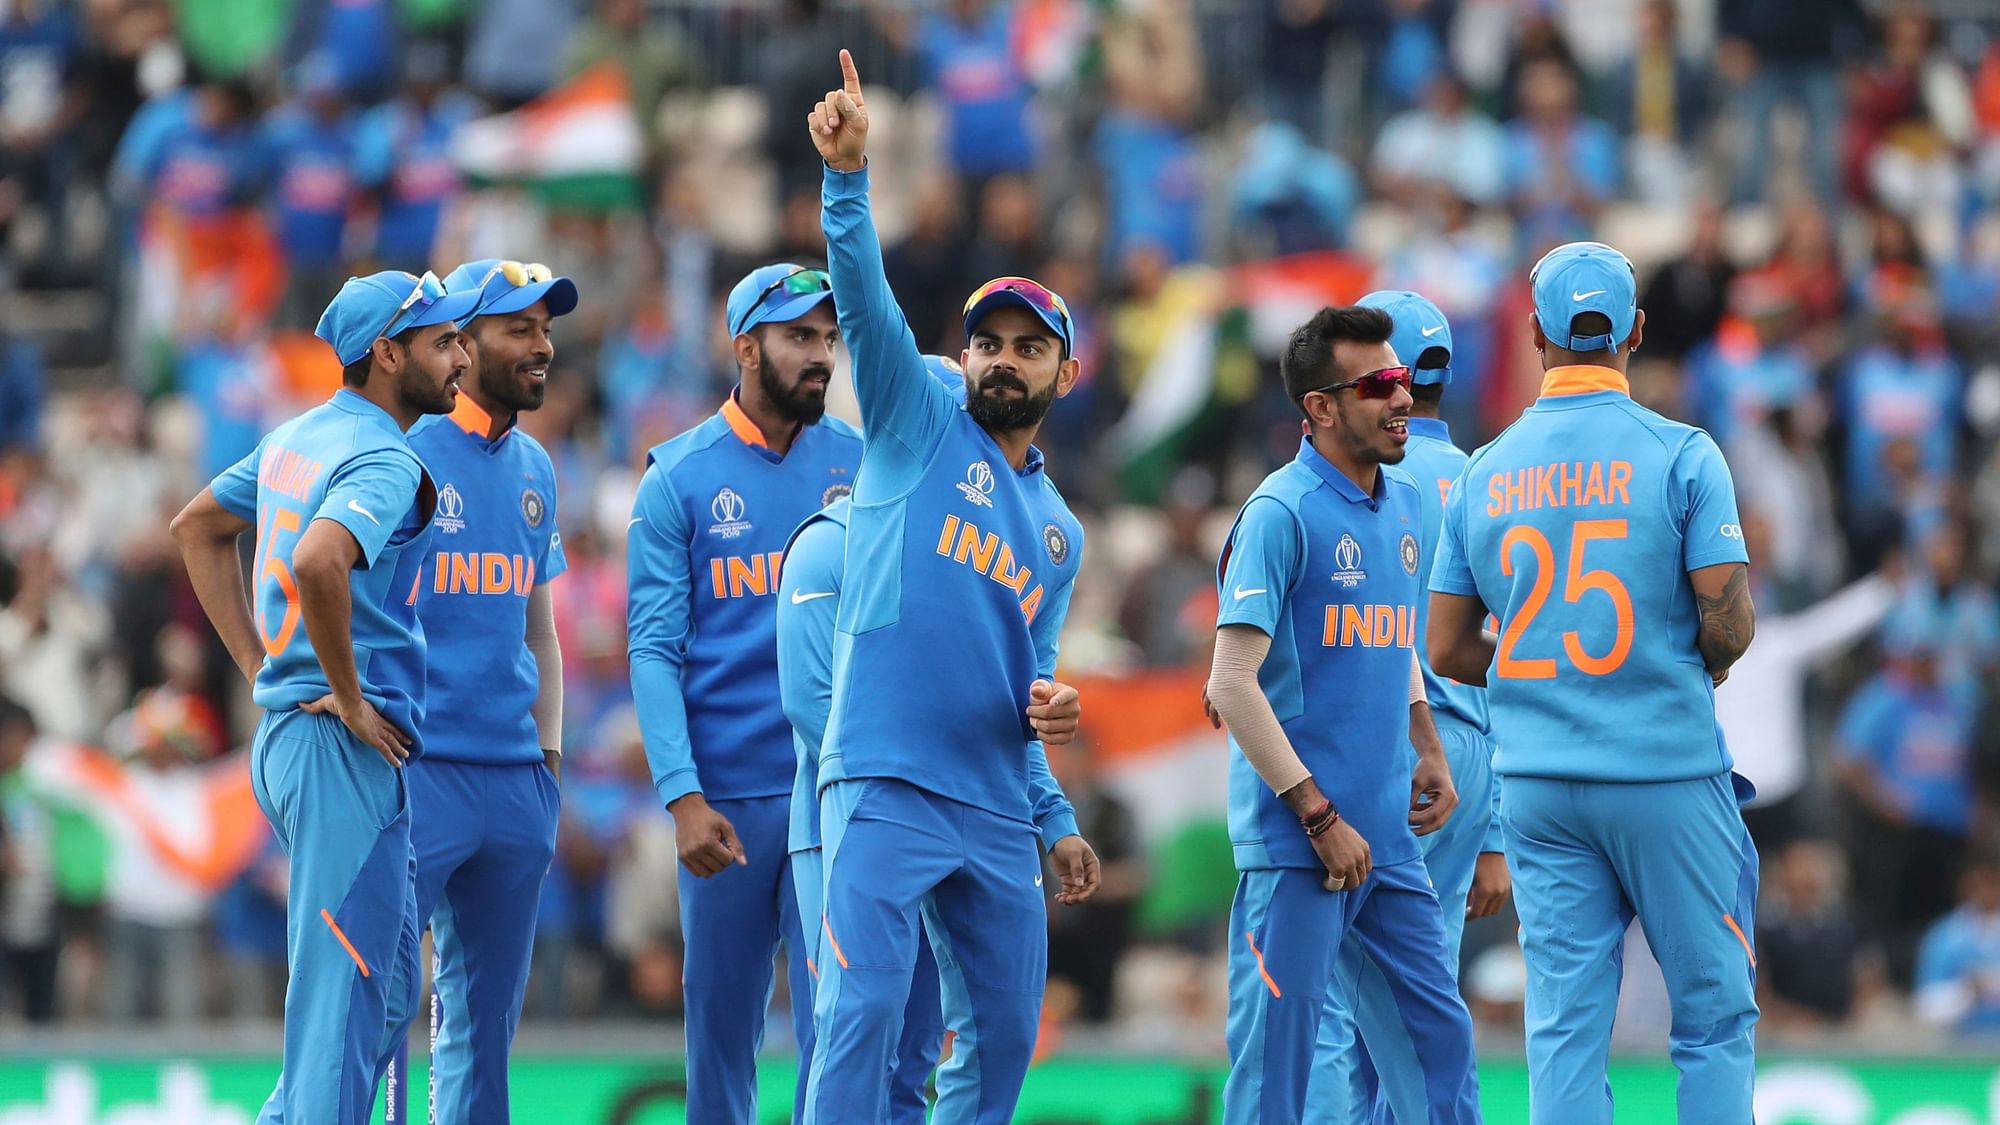 India vs SA Live Score, Cricket World Cup 2019 Live Score Updates